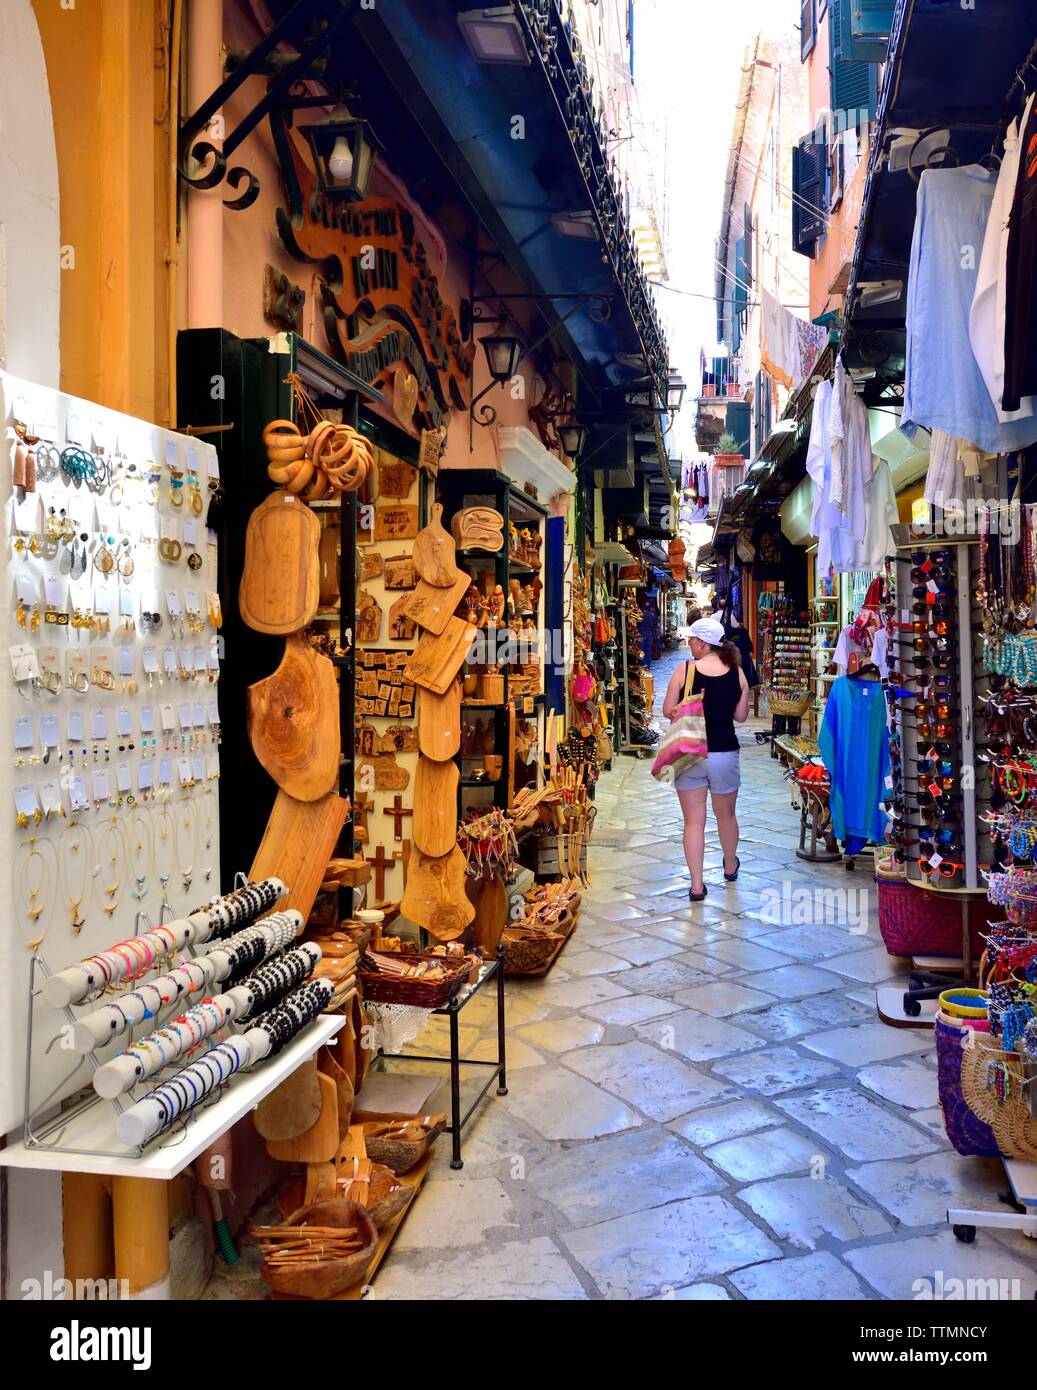 Turista femminile,a piedi attraverso Corfù città vecchia,negozi di souvenir,strada stretta,negozi,CORFU, ISOLE IONIE,isole greche,Grecia Foto Stock